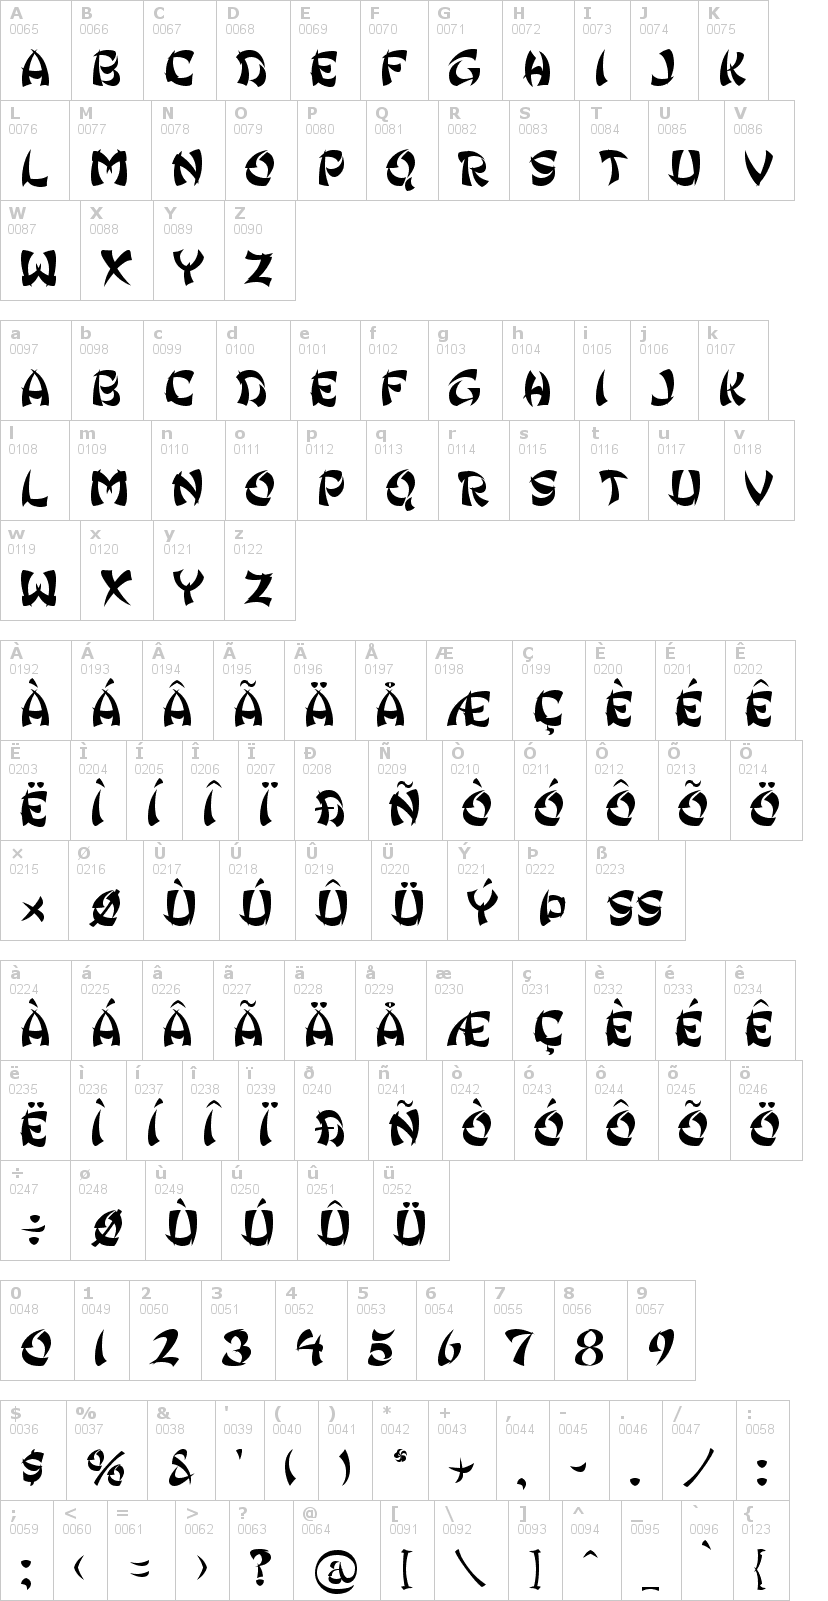 Lettere dell'alfabeto del font ginko con le quali è possibile realizzare adesivi prespaziati